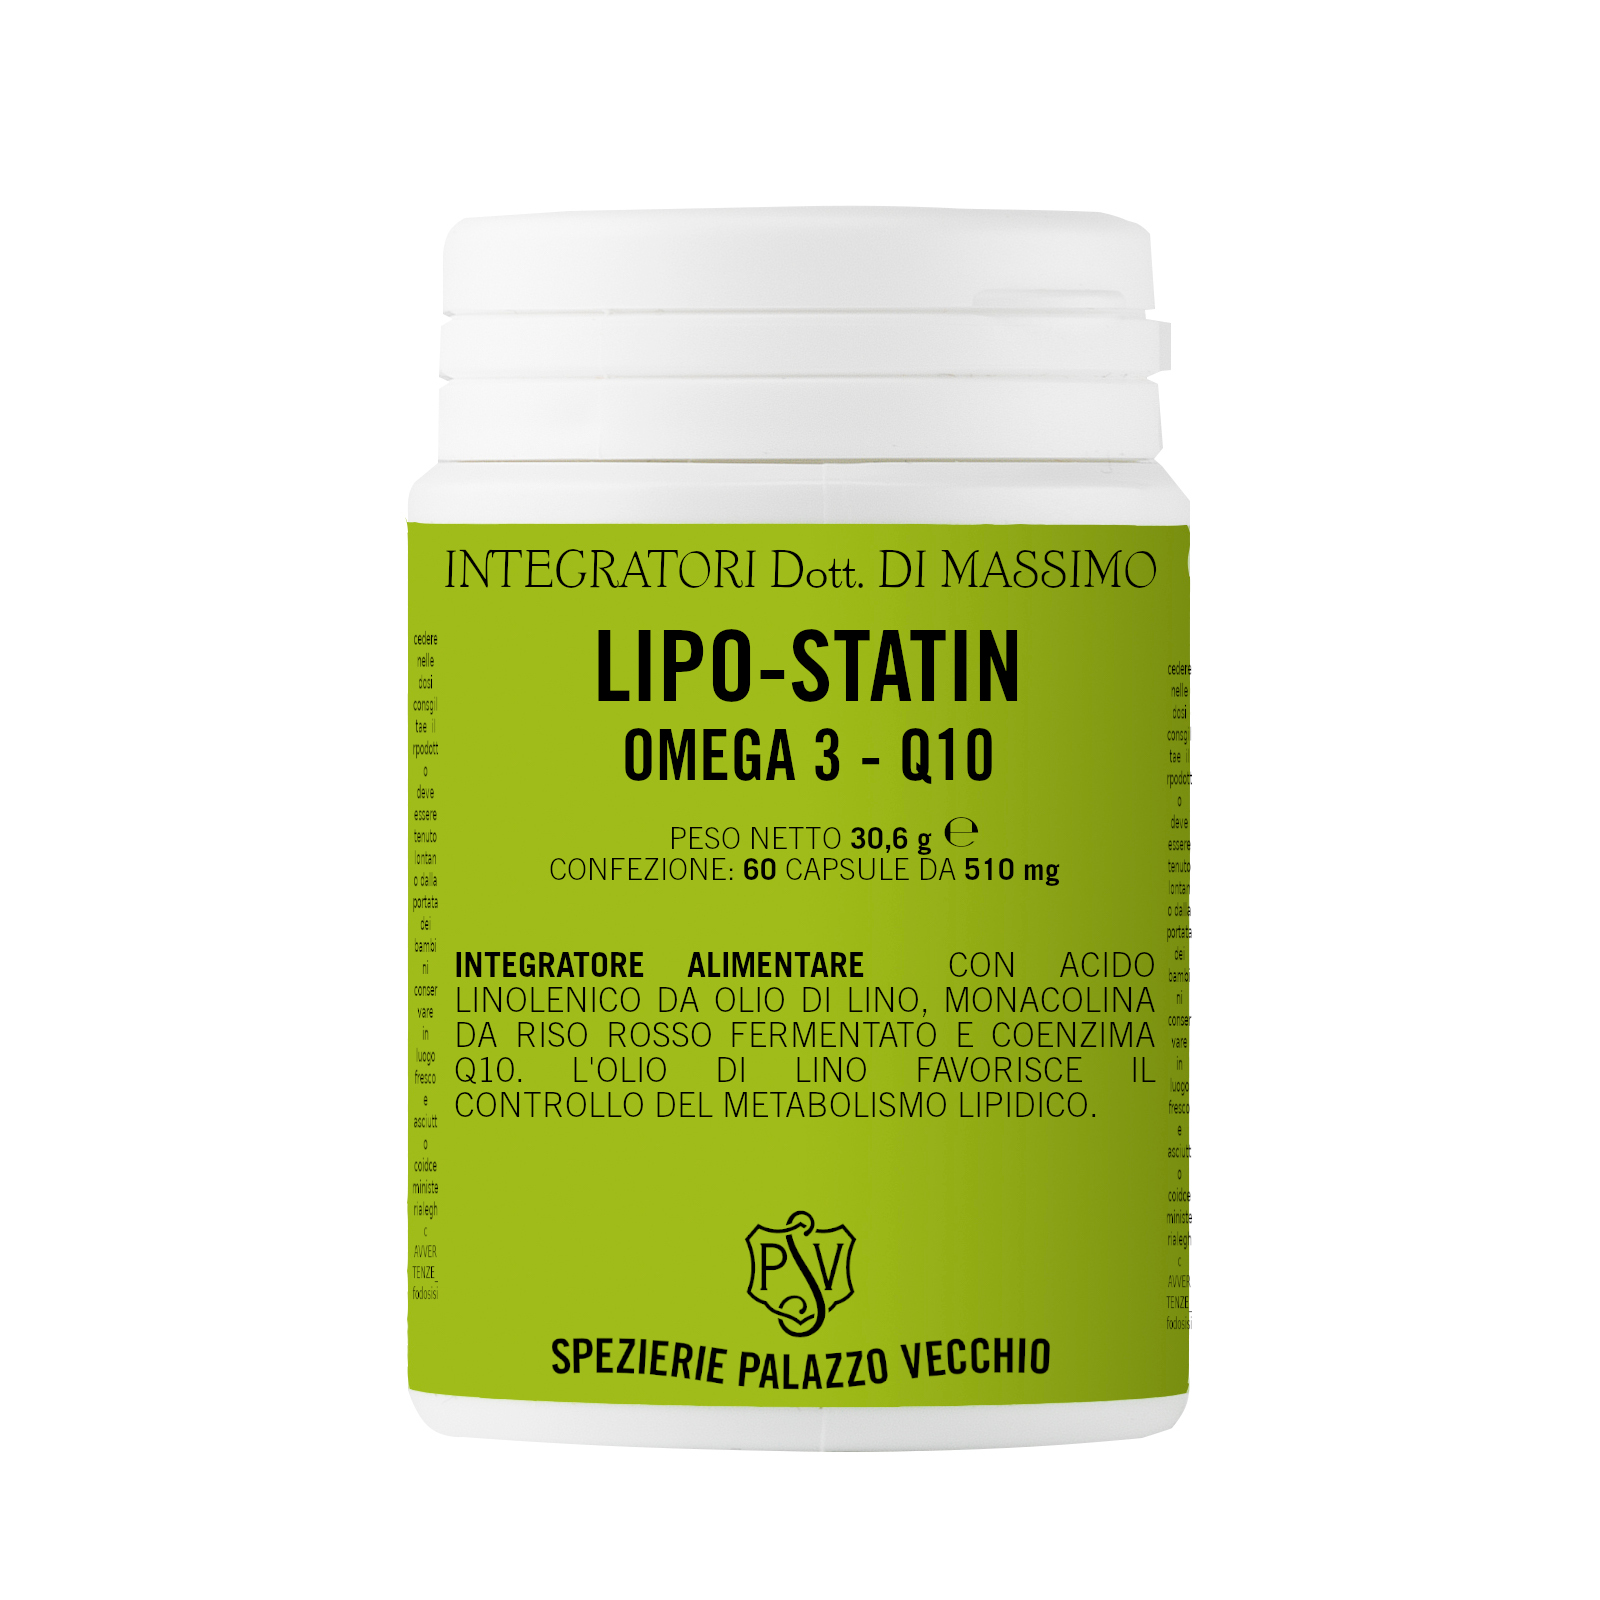 LIPO STATIN Riso rosso fermentato-Omega3 -0